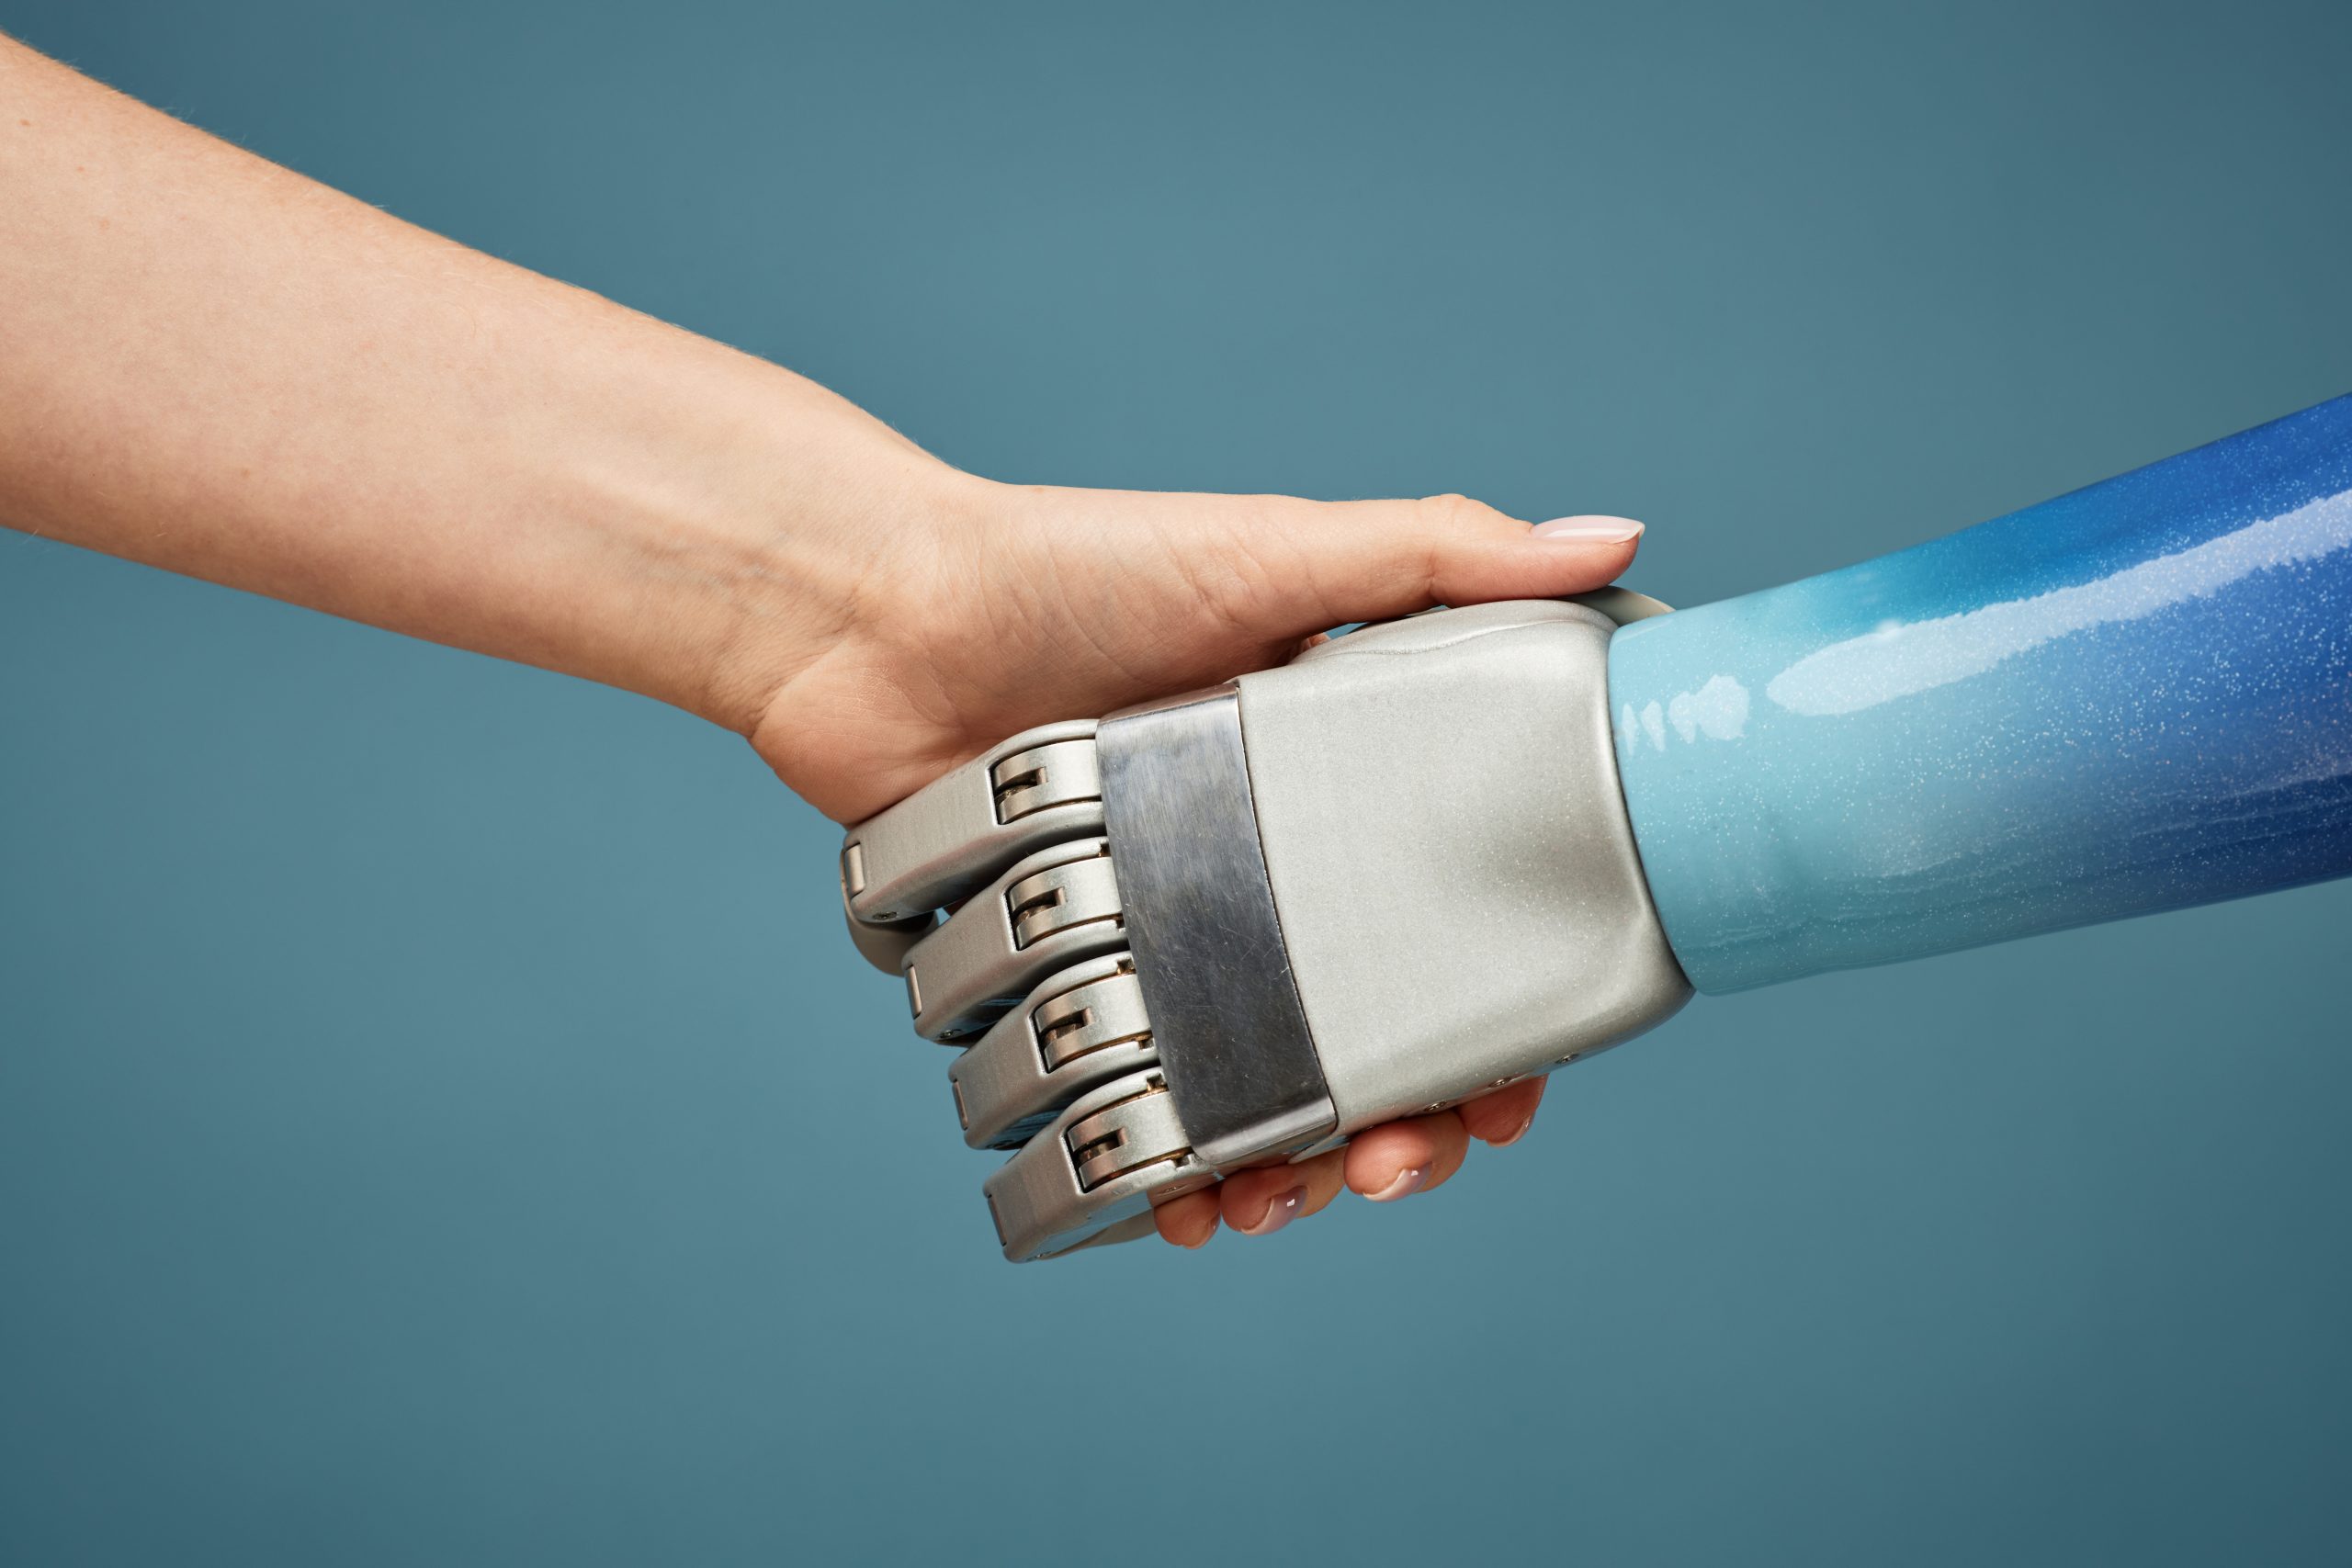 Mensch und Roboter reichen sich die Hand